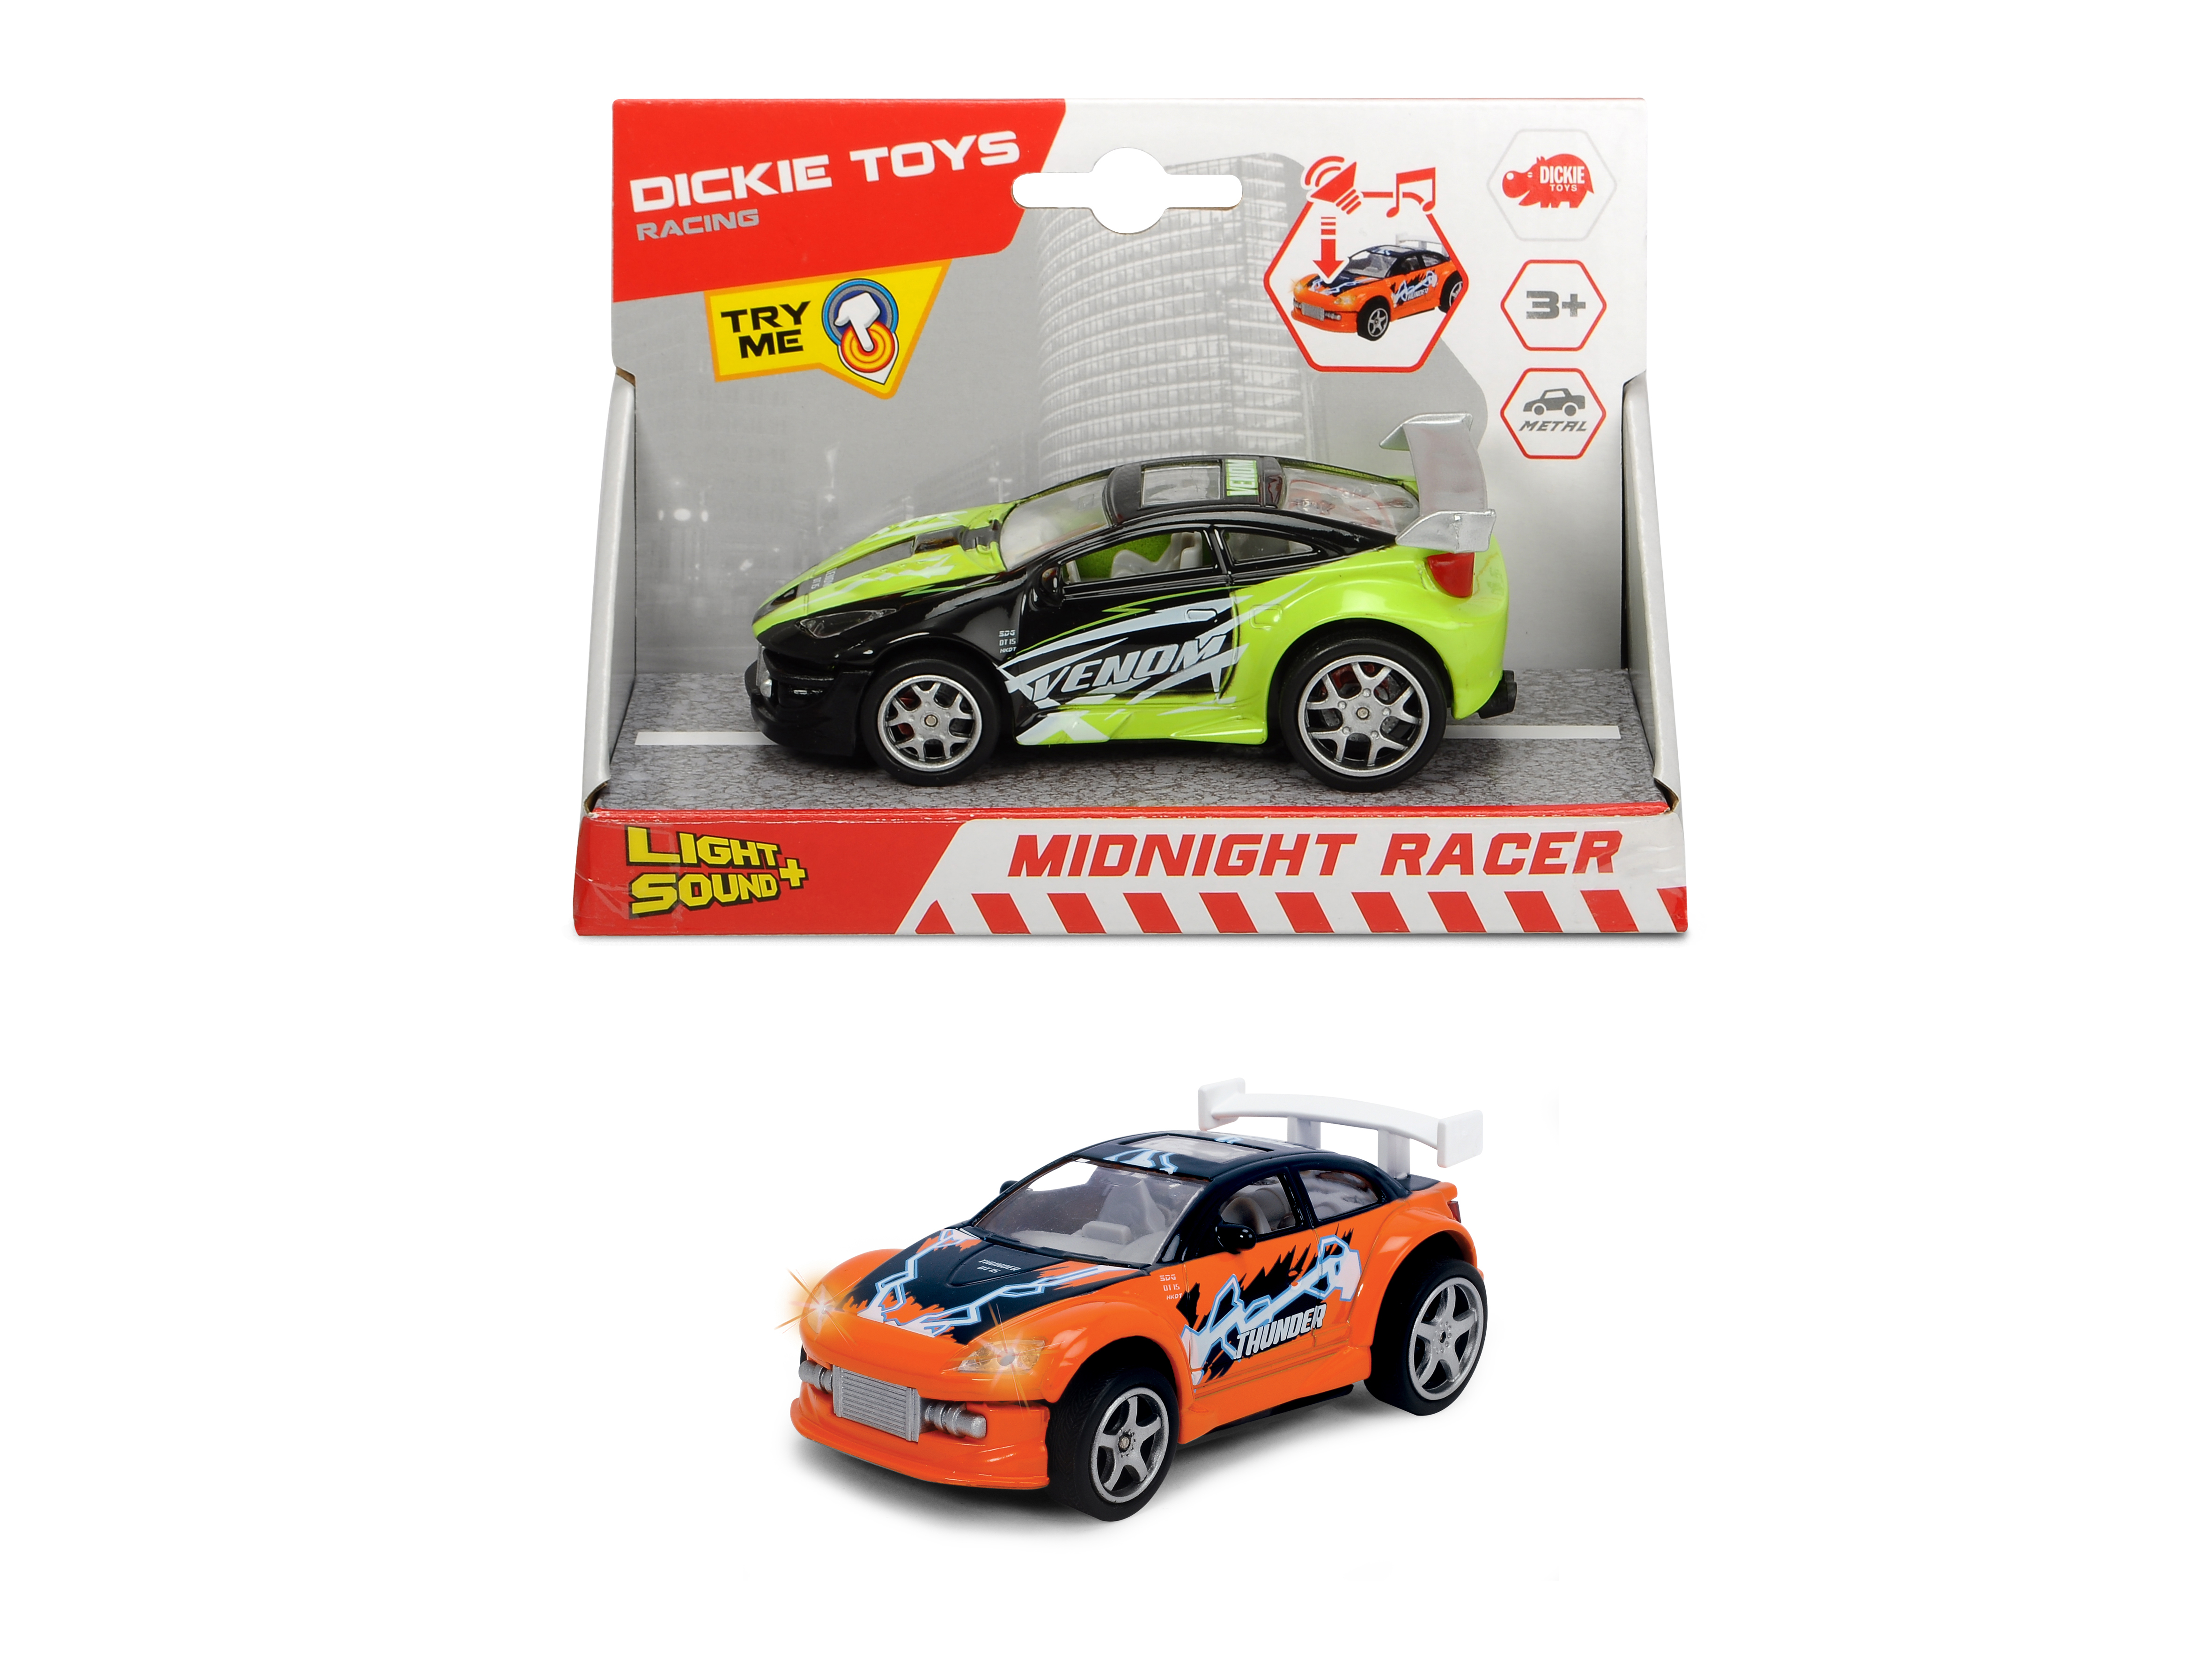 2-sort. DICKIE-TOYS Racer, Orange/Blau Grün/Schwarz, Spielzeugauto Midnight